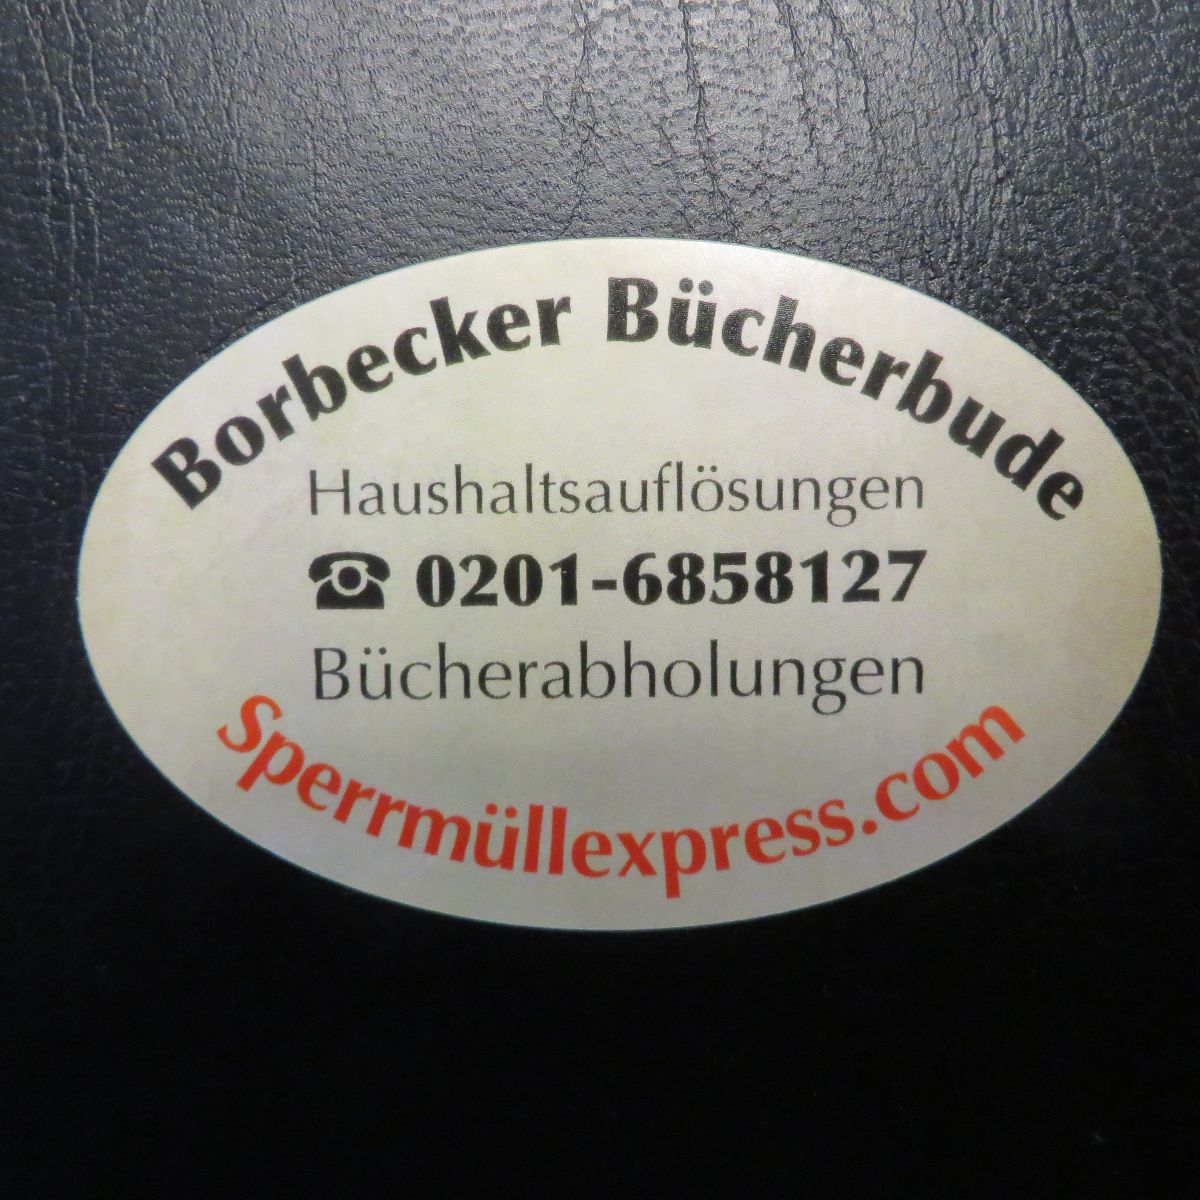 Borbecker Bücherbude